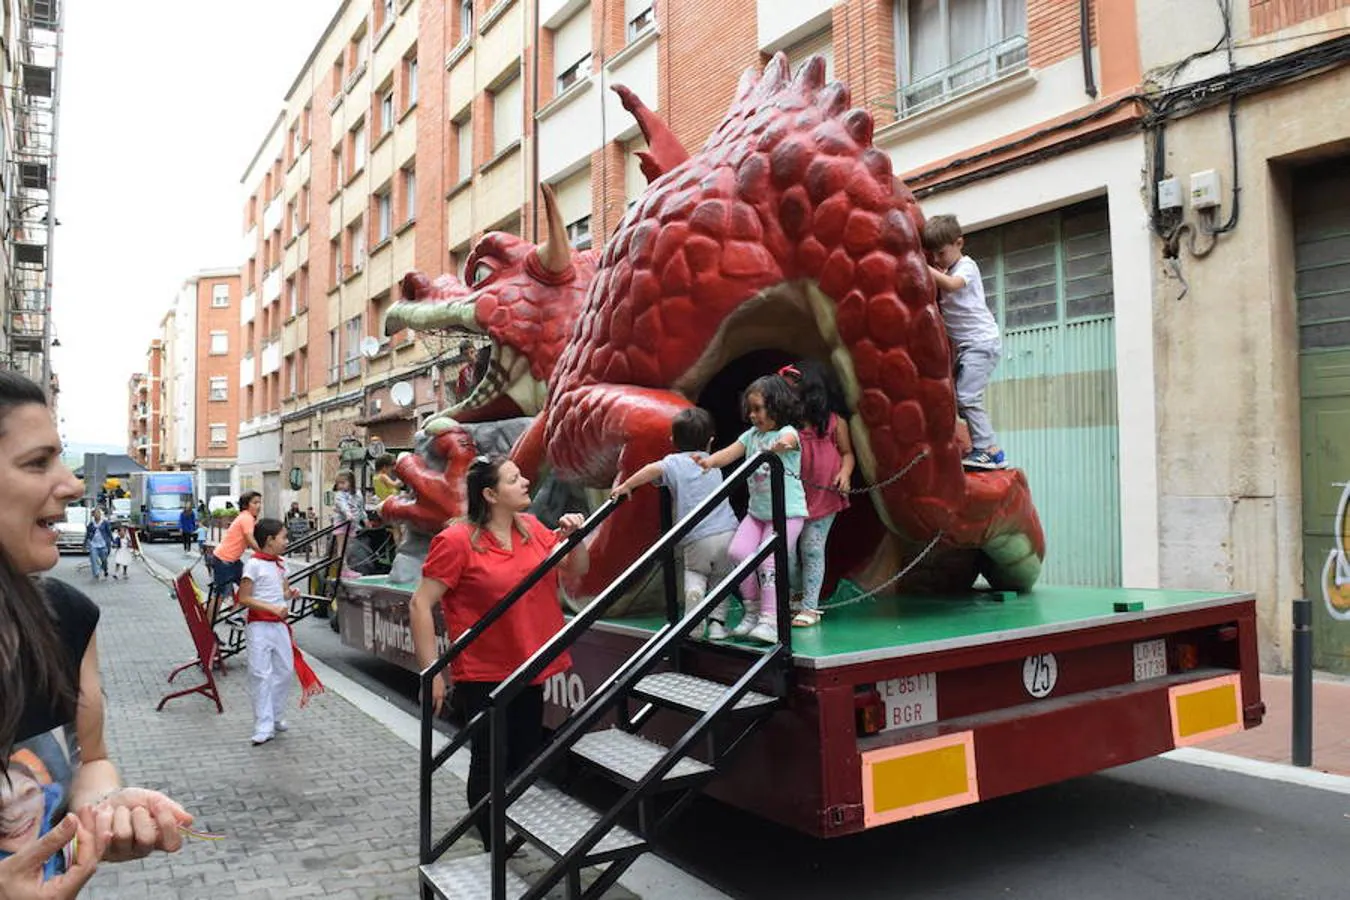 Fiesta solidaria con hinchables y dragón tragantúa celebrada en la calle Beratúa organizada por la Peña la Simpatía y la Federación de Peñas de Logroño.